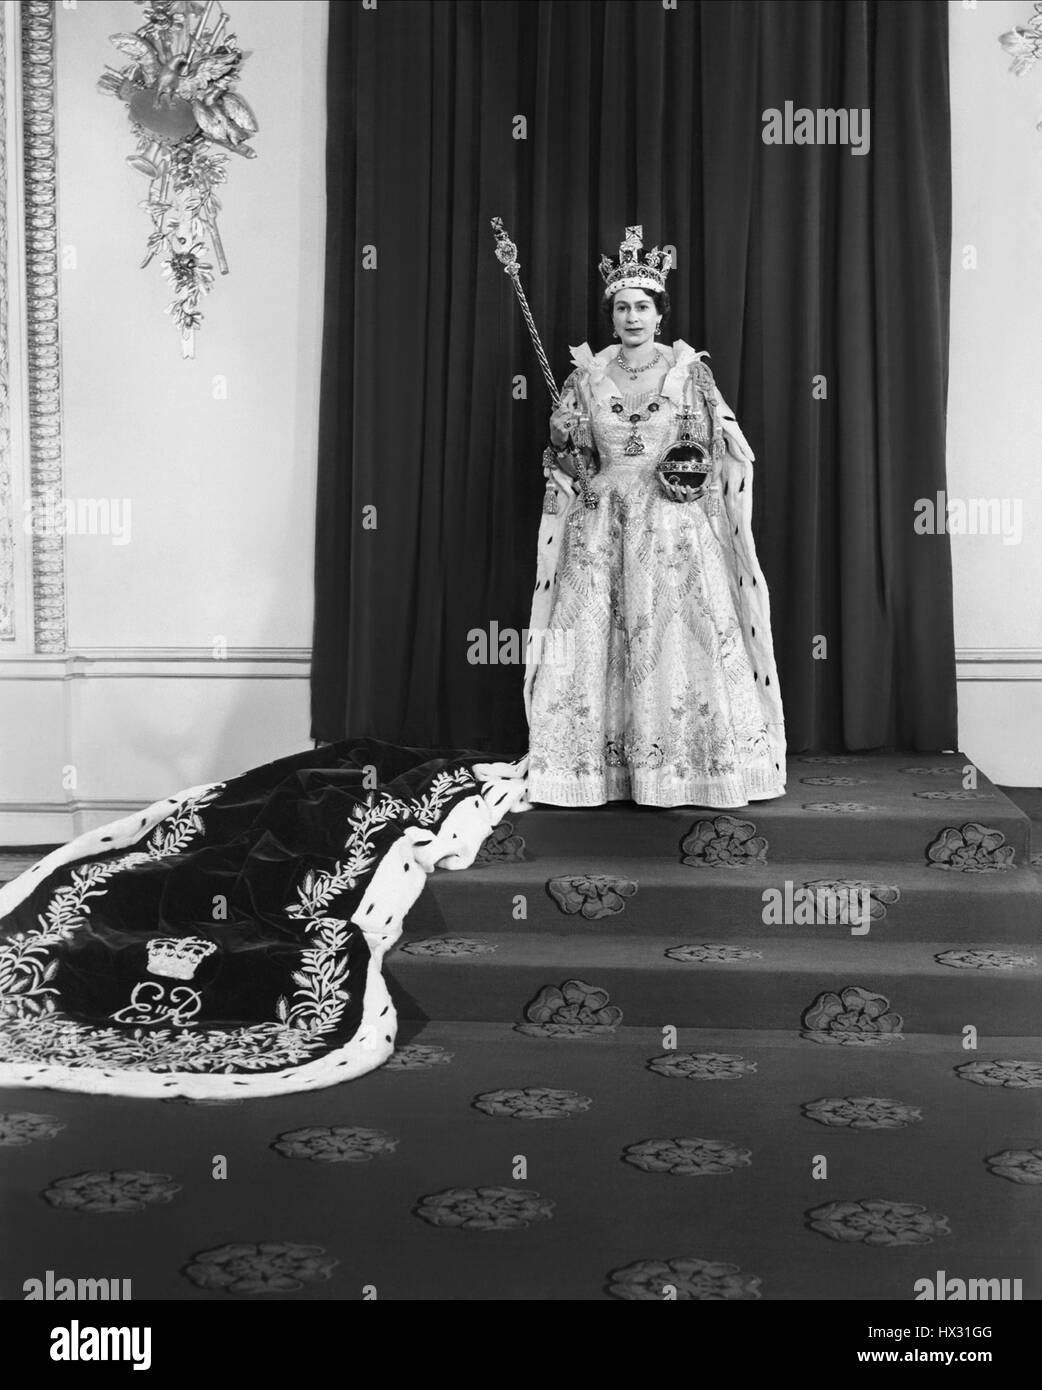 QUEEN ELIZABETH II ROYAL FAMILY QUEEN OF ENGLAND 02 June 1953 Stock Photo